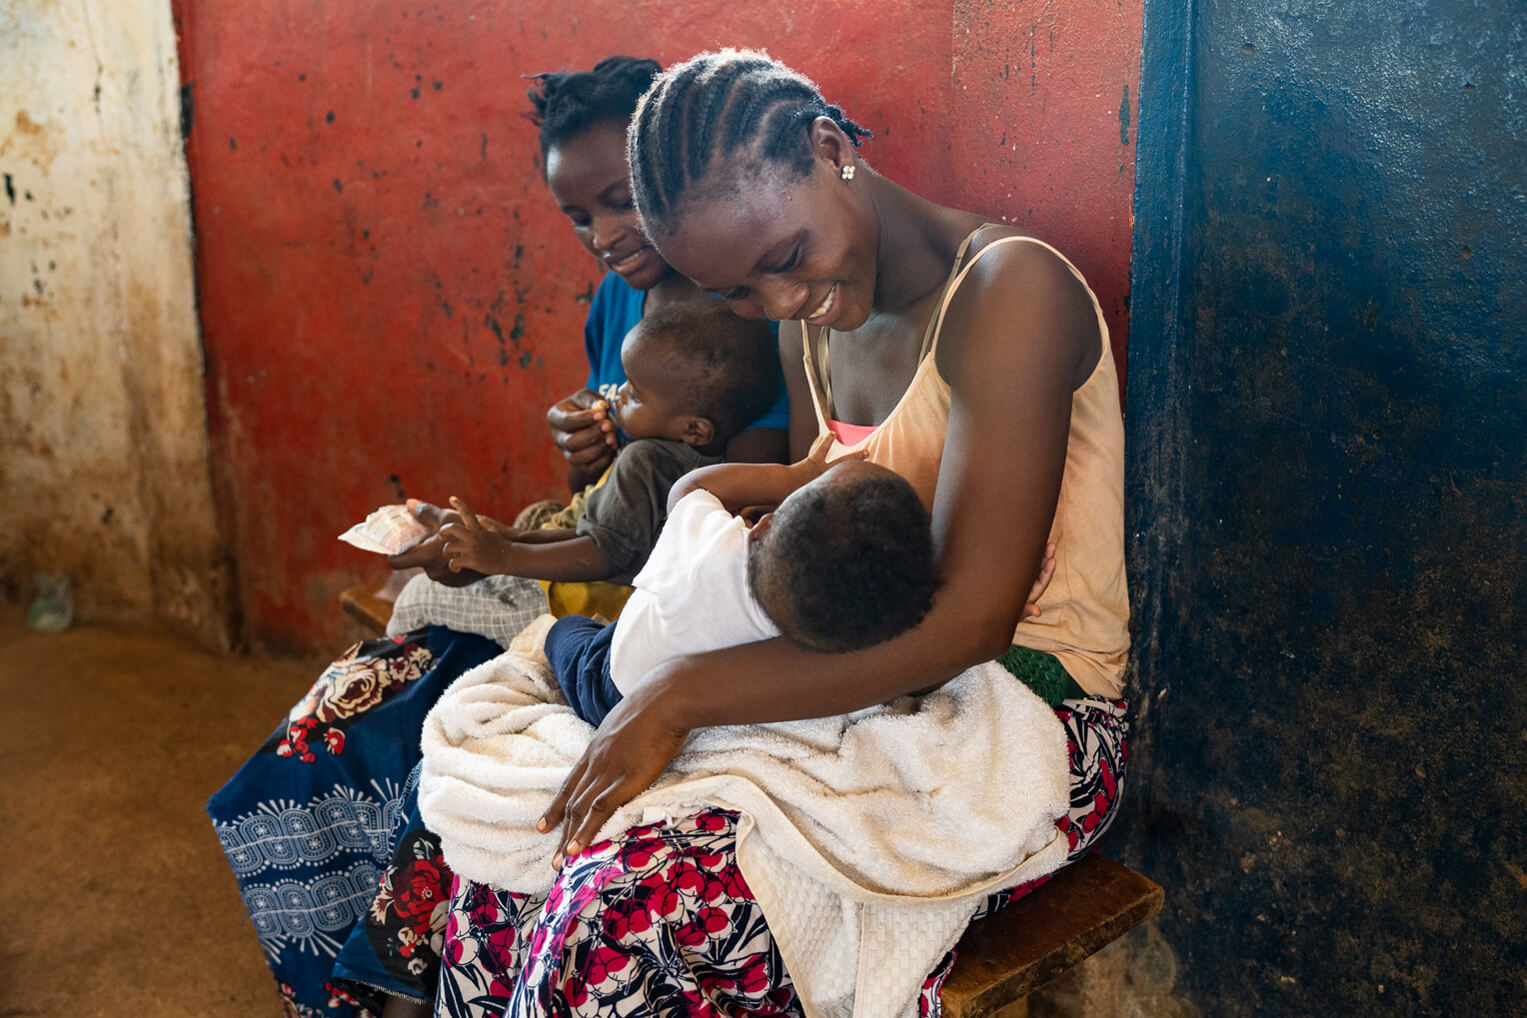 Madres jóvenes y sus hijos asistieron a una jornada de chequeo y aprendizaje para prevenir y tratar la desnutrición.